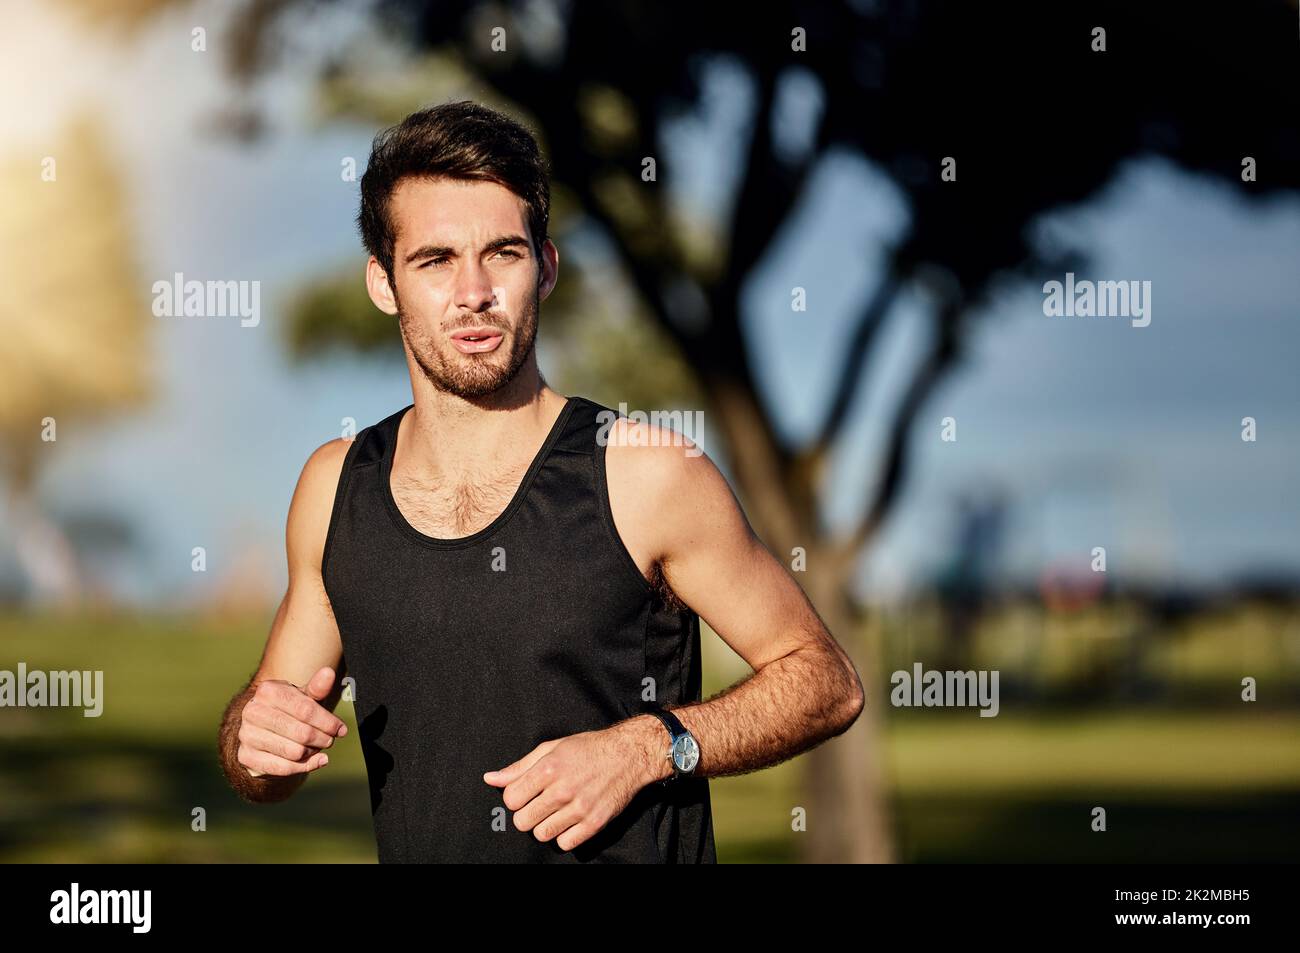 Machen Sie einfach weiter. Aufnahme eines jungen Mannes, der in einem Park joggt. Stockfoto